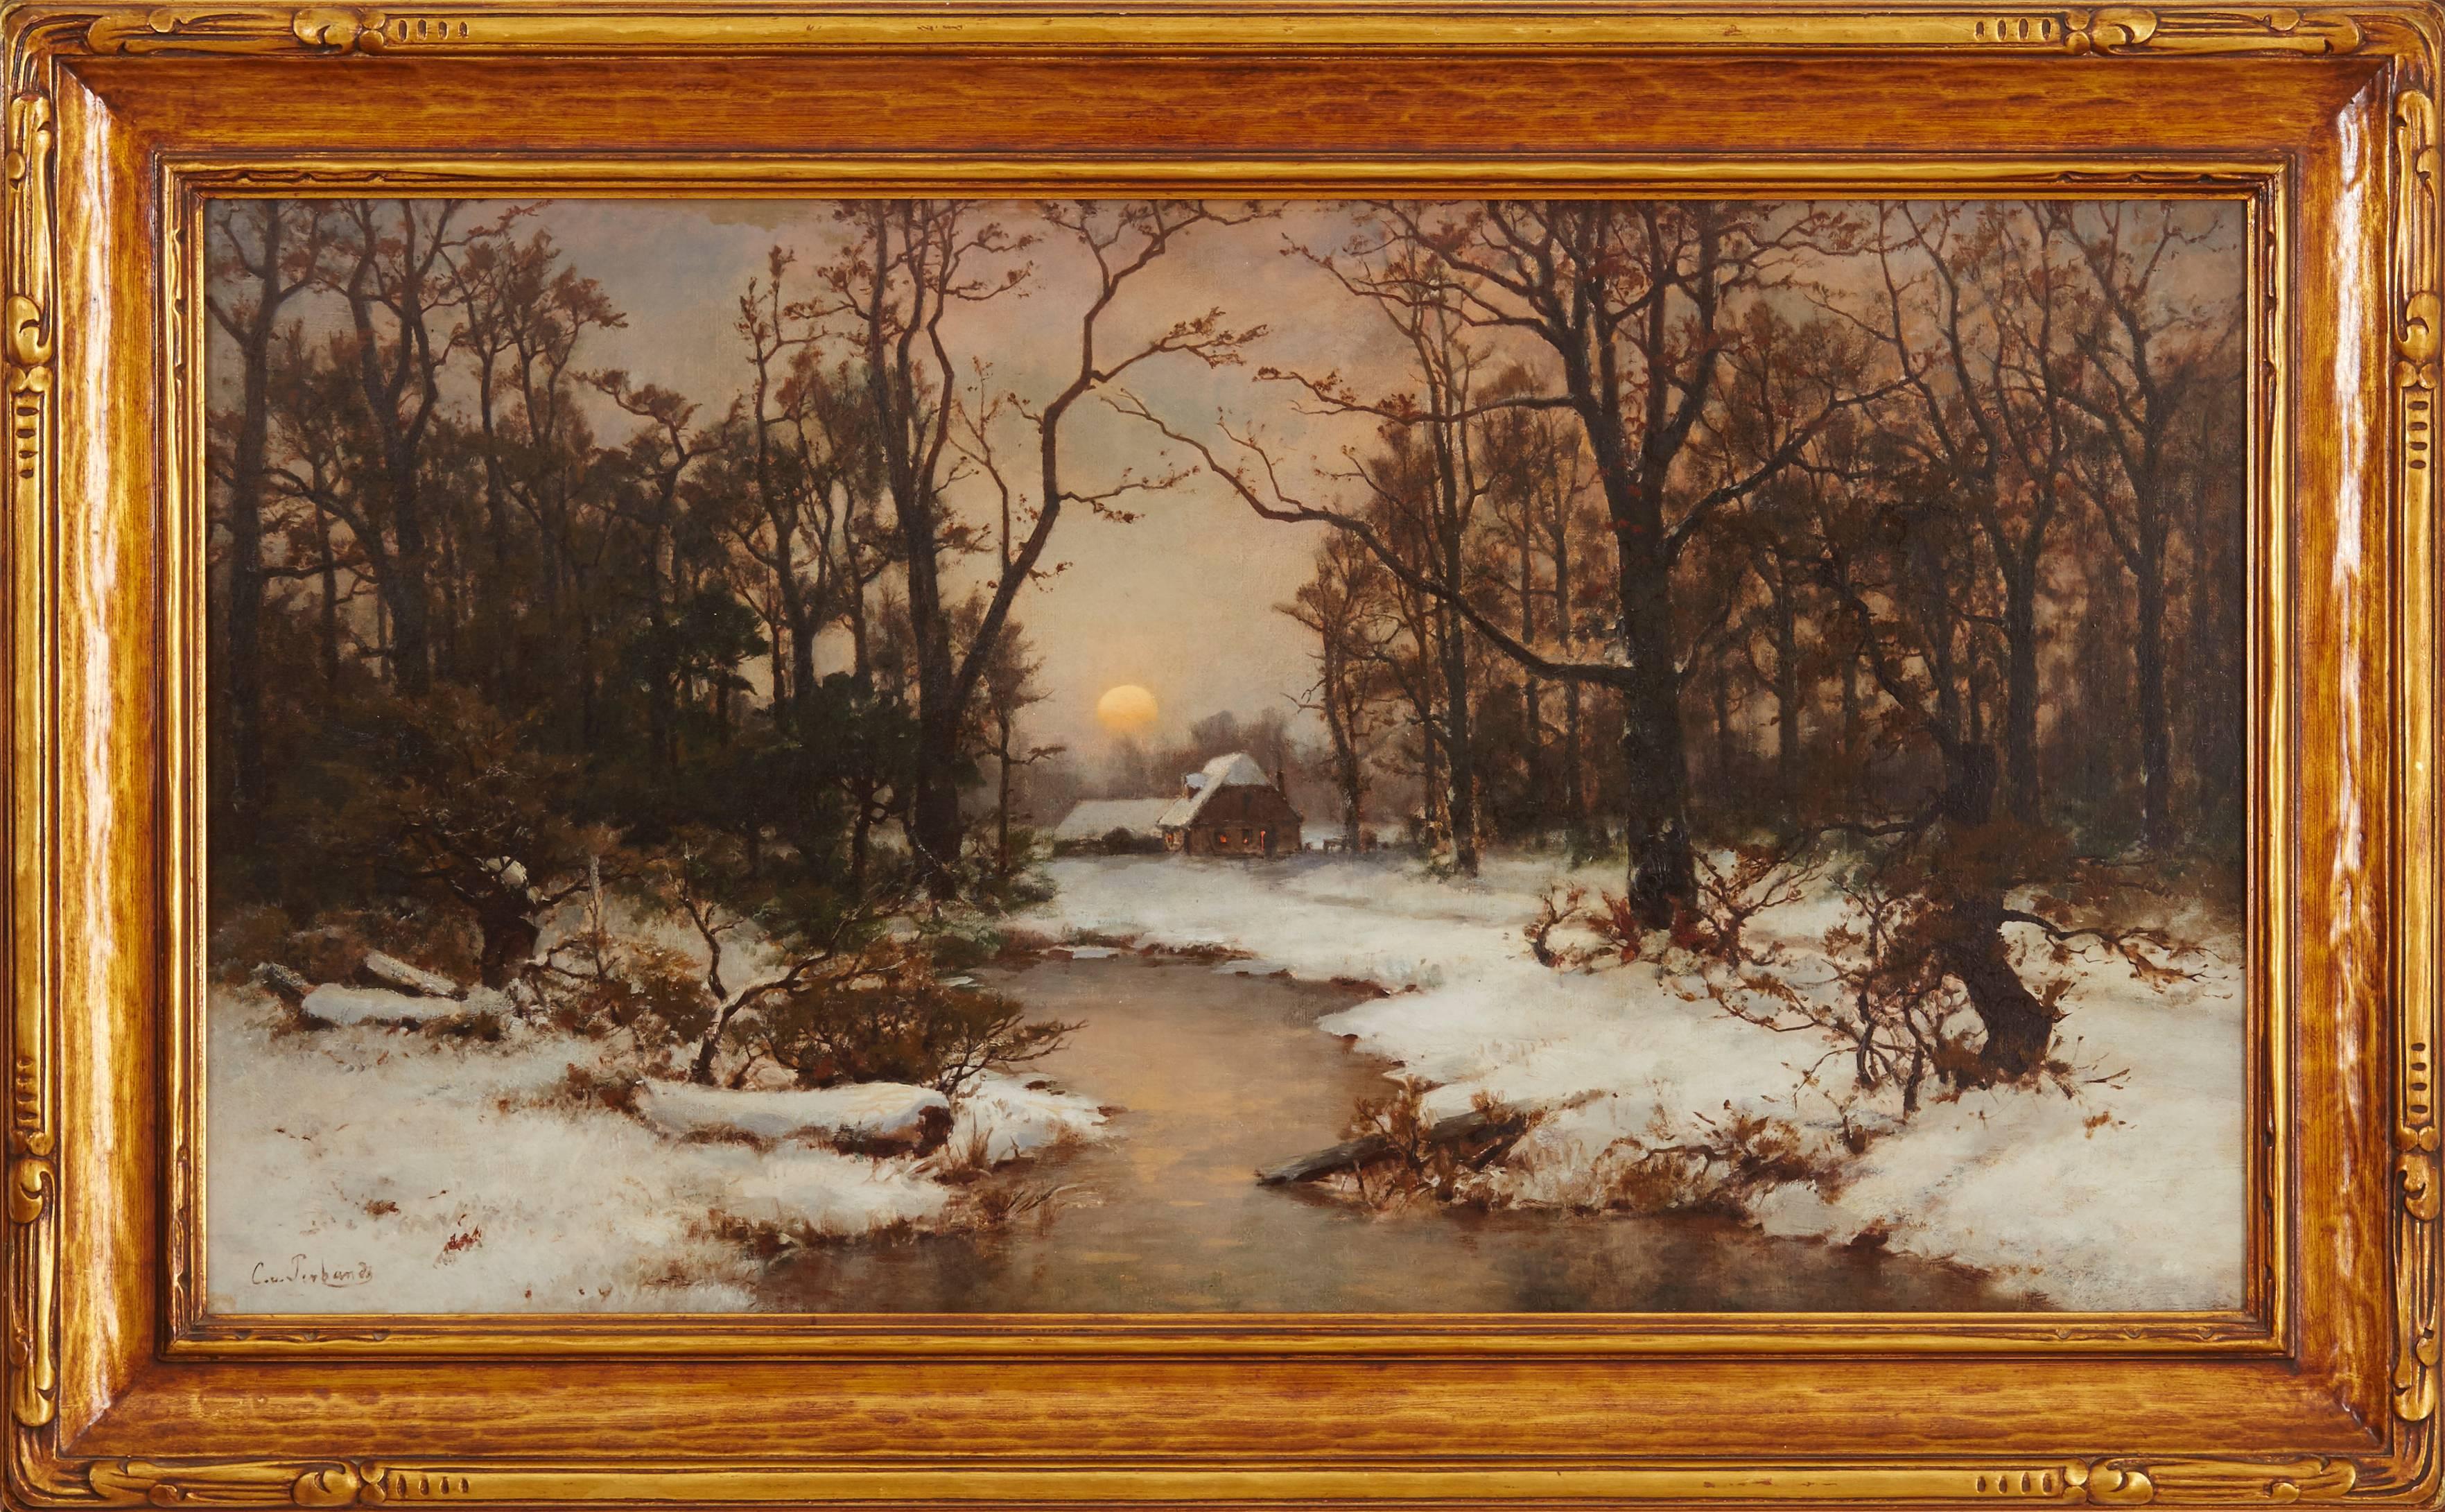 Carl Von Perbandt Landscape Painting - Winter Cabin in the Sierras